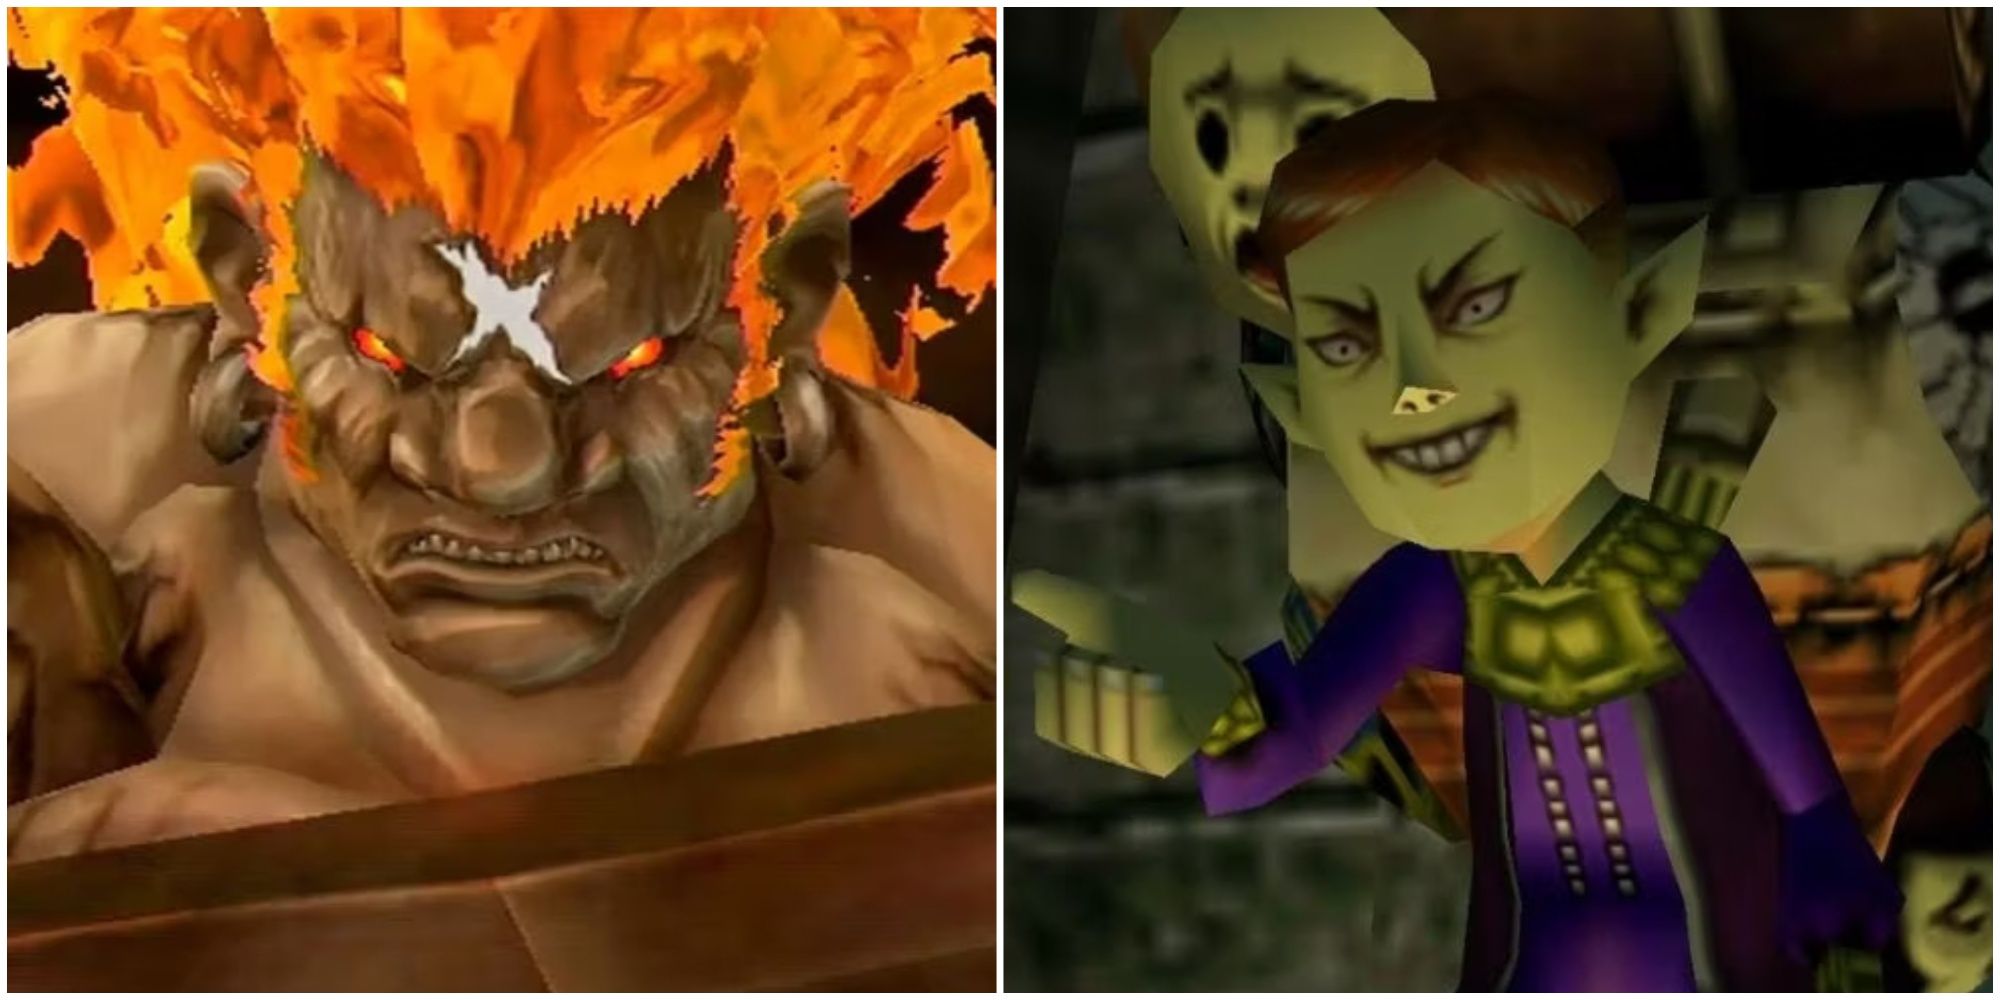 Legend of Zelda: Majora's Mask Is a Survival Horror Game